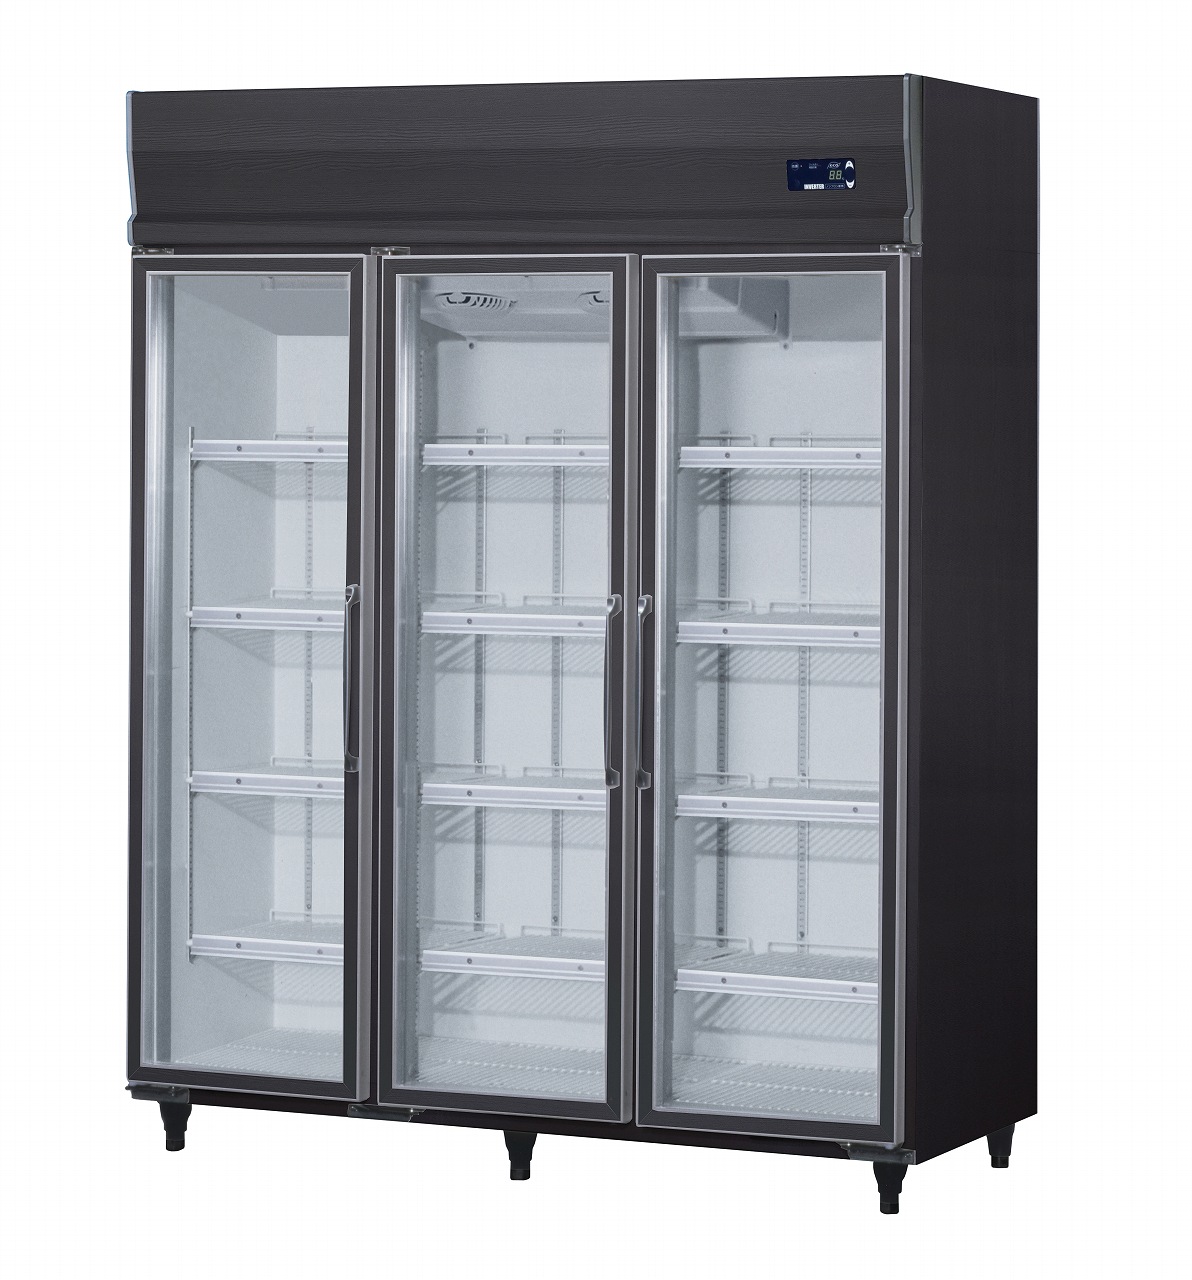 [上置型]インバータ制御冷蔵ショーケース エコ蔵くん | 店舗用冷凍・冷蔵ショーケース | 製品情報 | 大和冷機工業株式会社